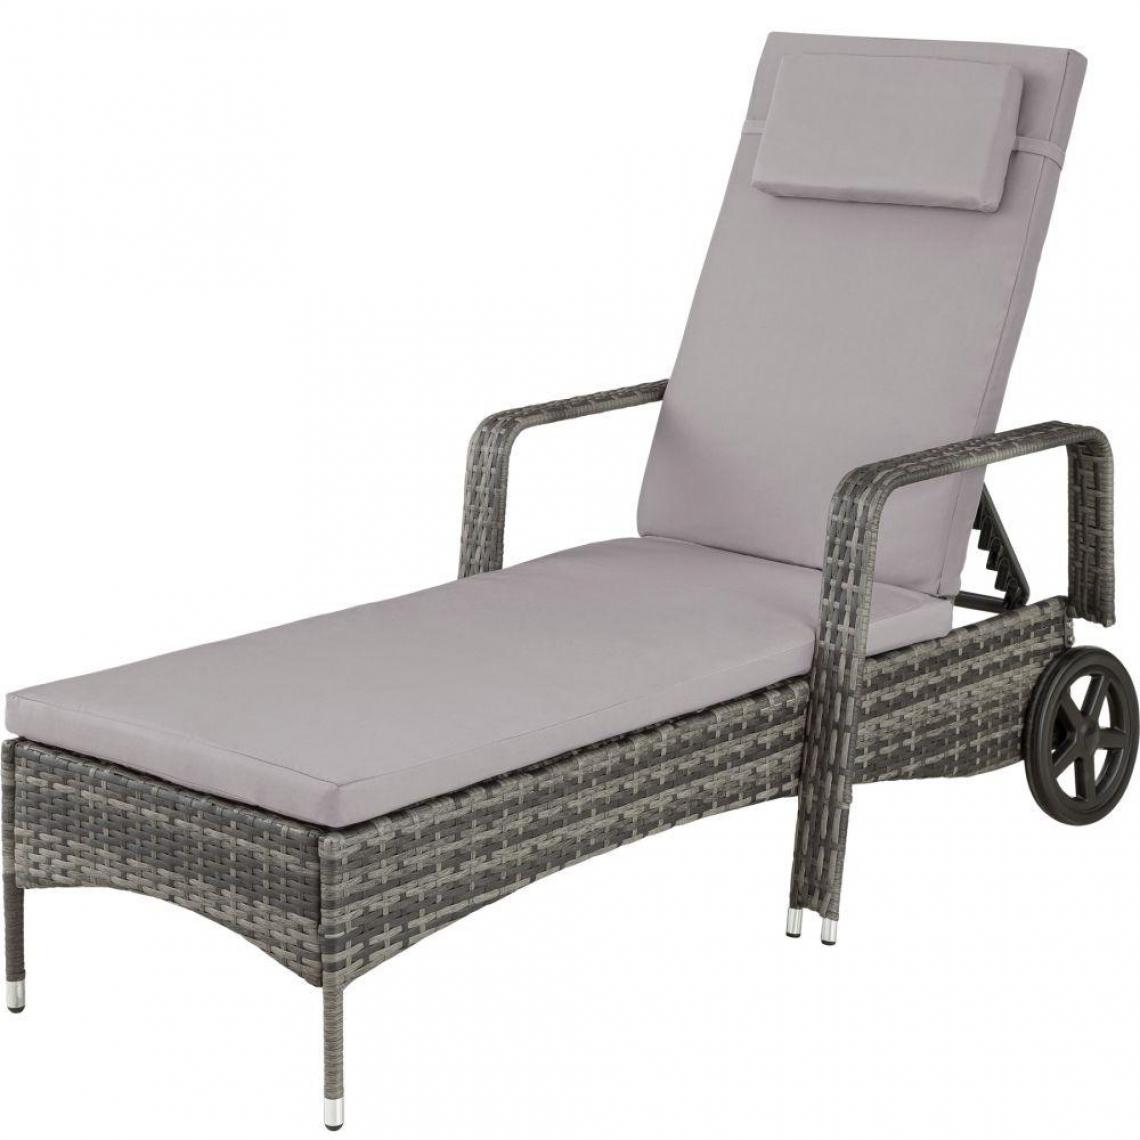 Helloshop26 - Bain de soleil transat meuble jardin métal 6 positions avec roulettes gris 2208052 - Transats, chaises longues